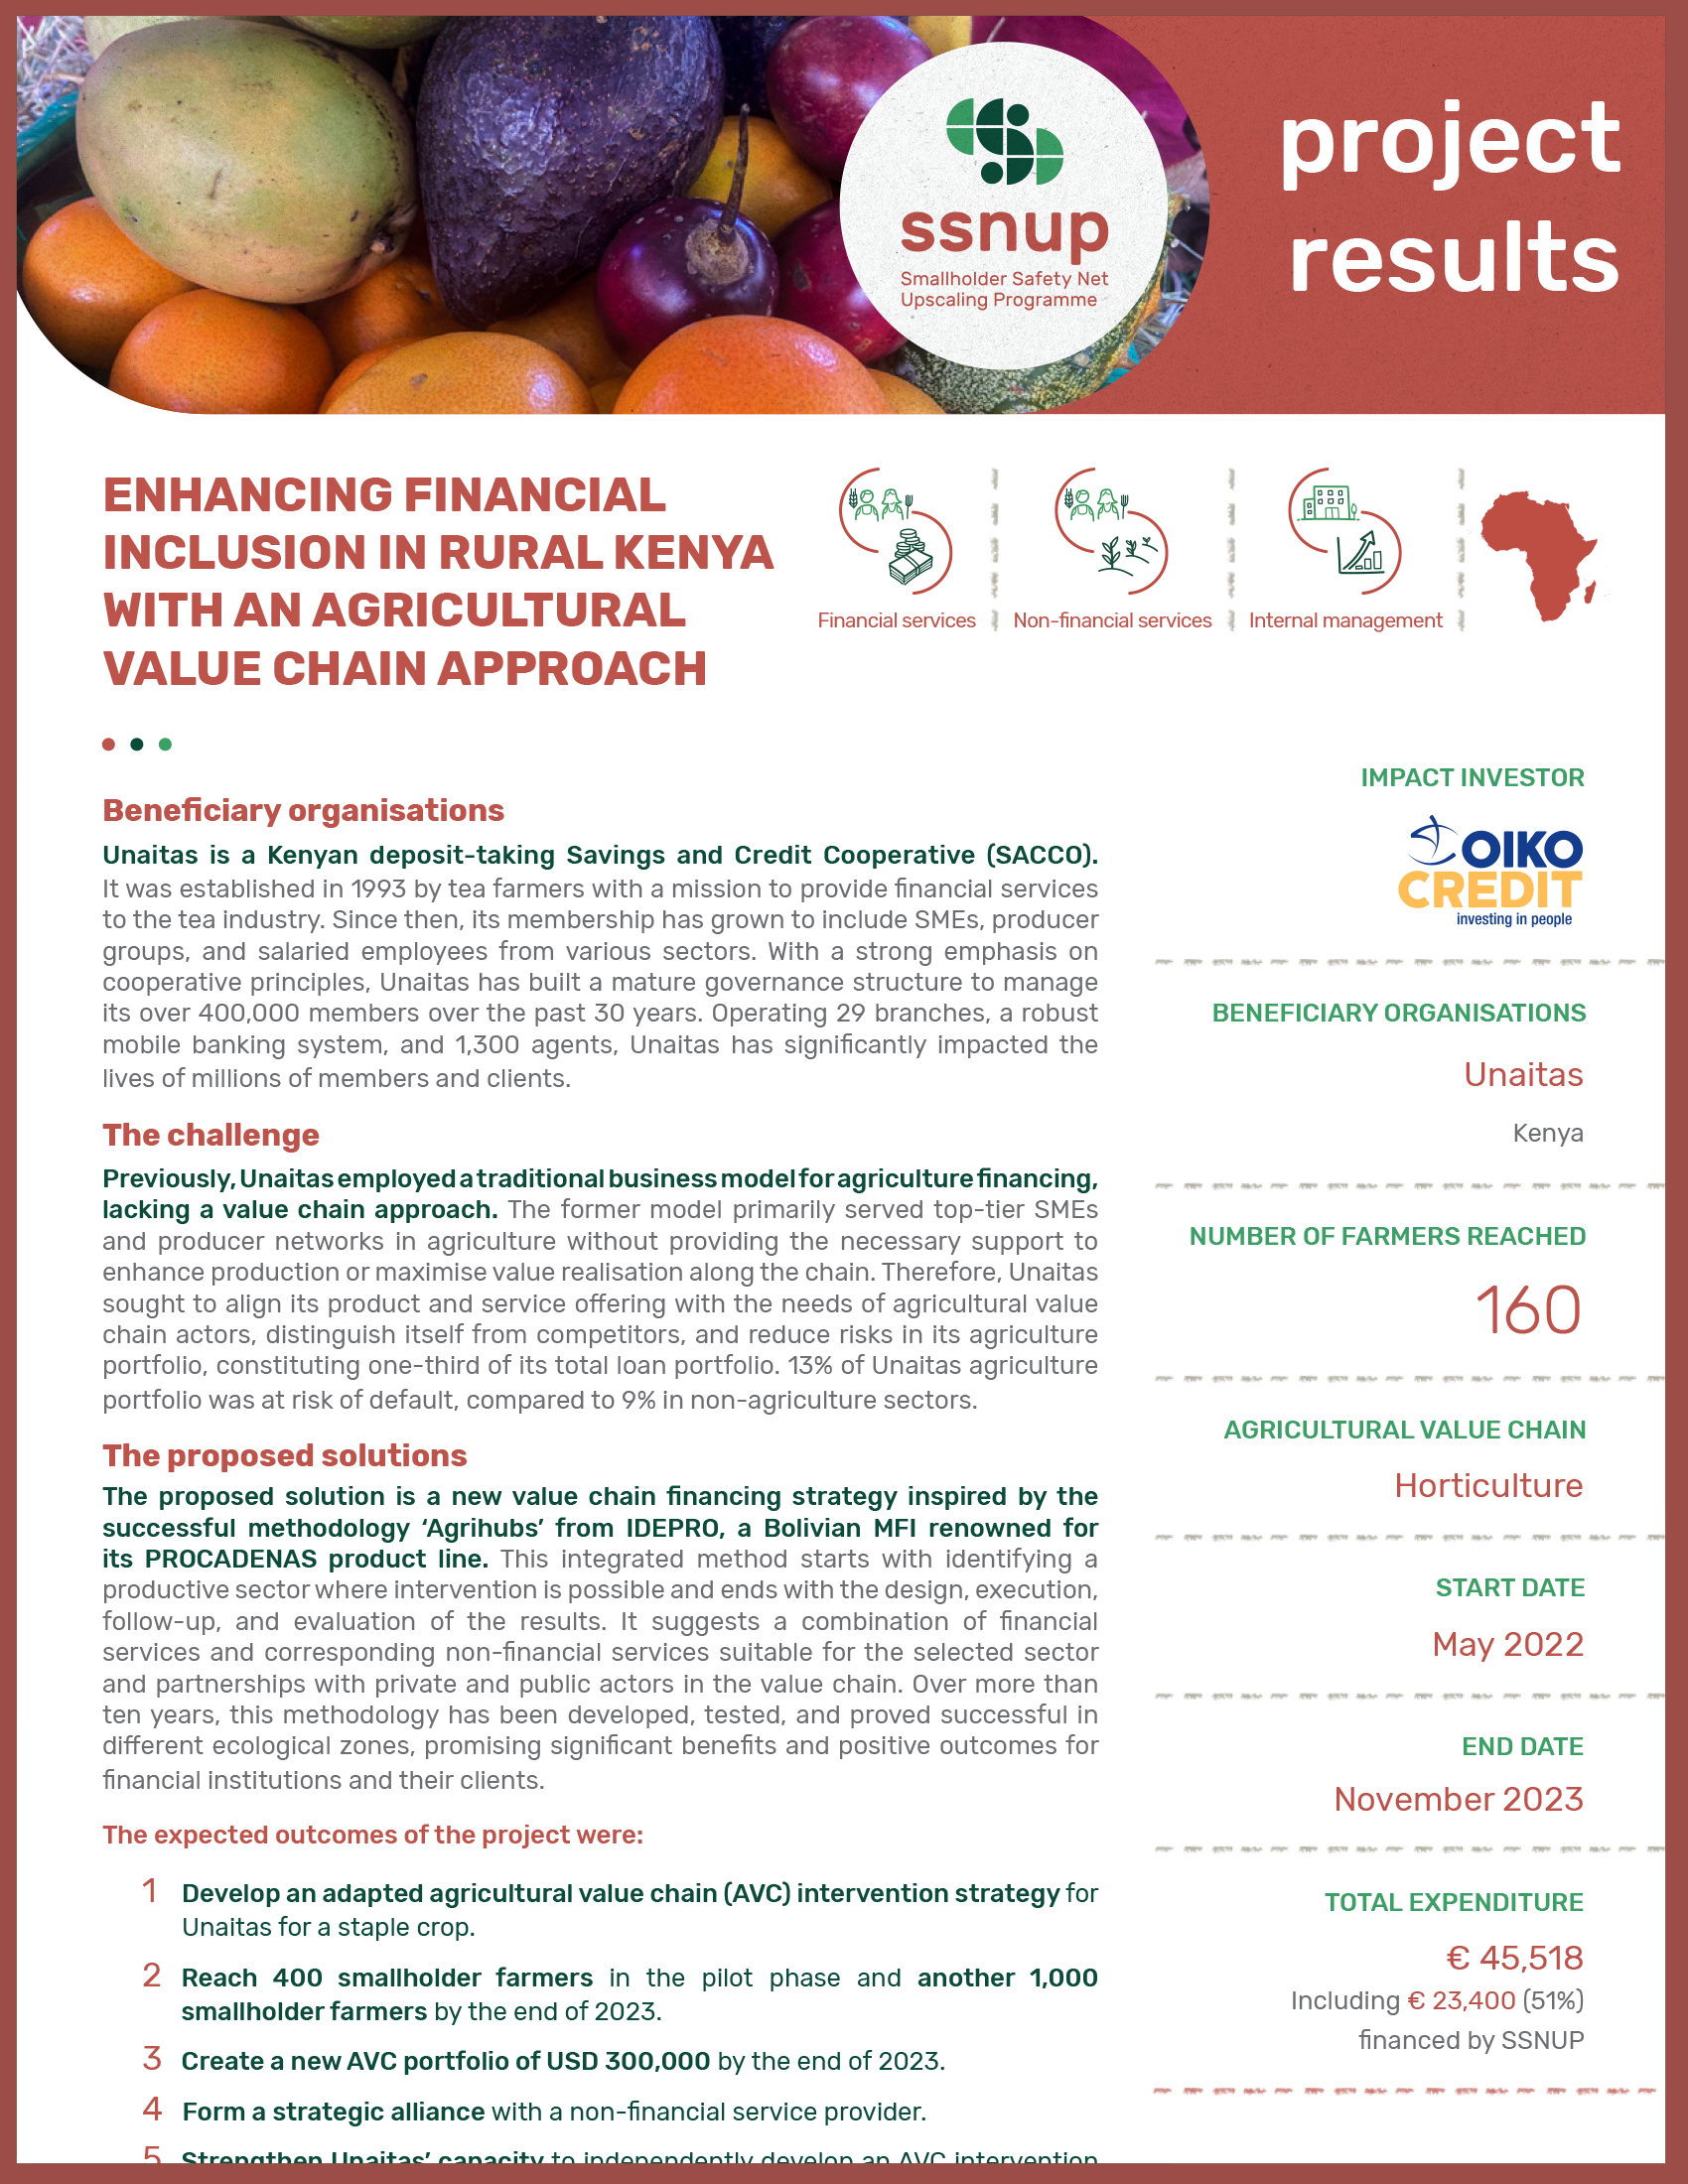 Améliorer l'inclusion financière dans les zones rurales du Kenya avec une approche de chaîne de valeur agricole